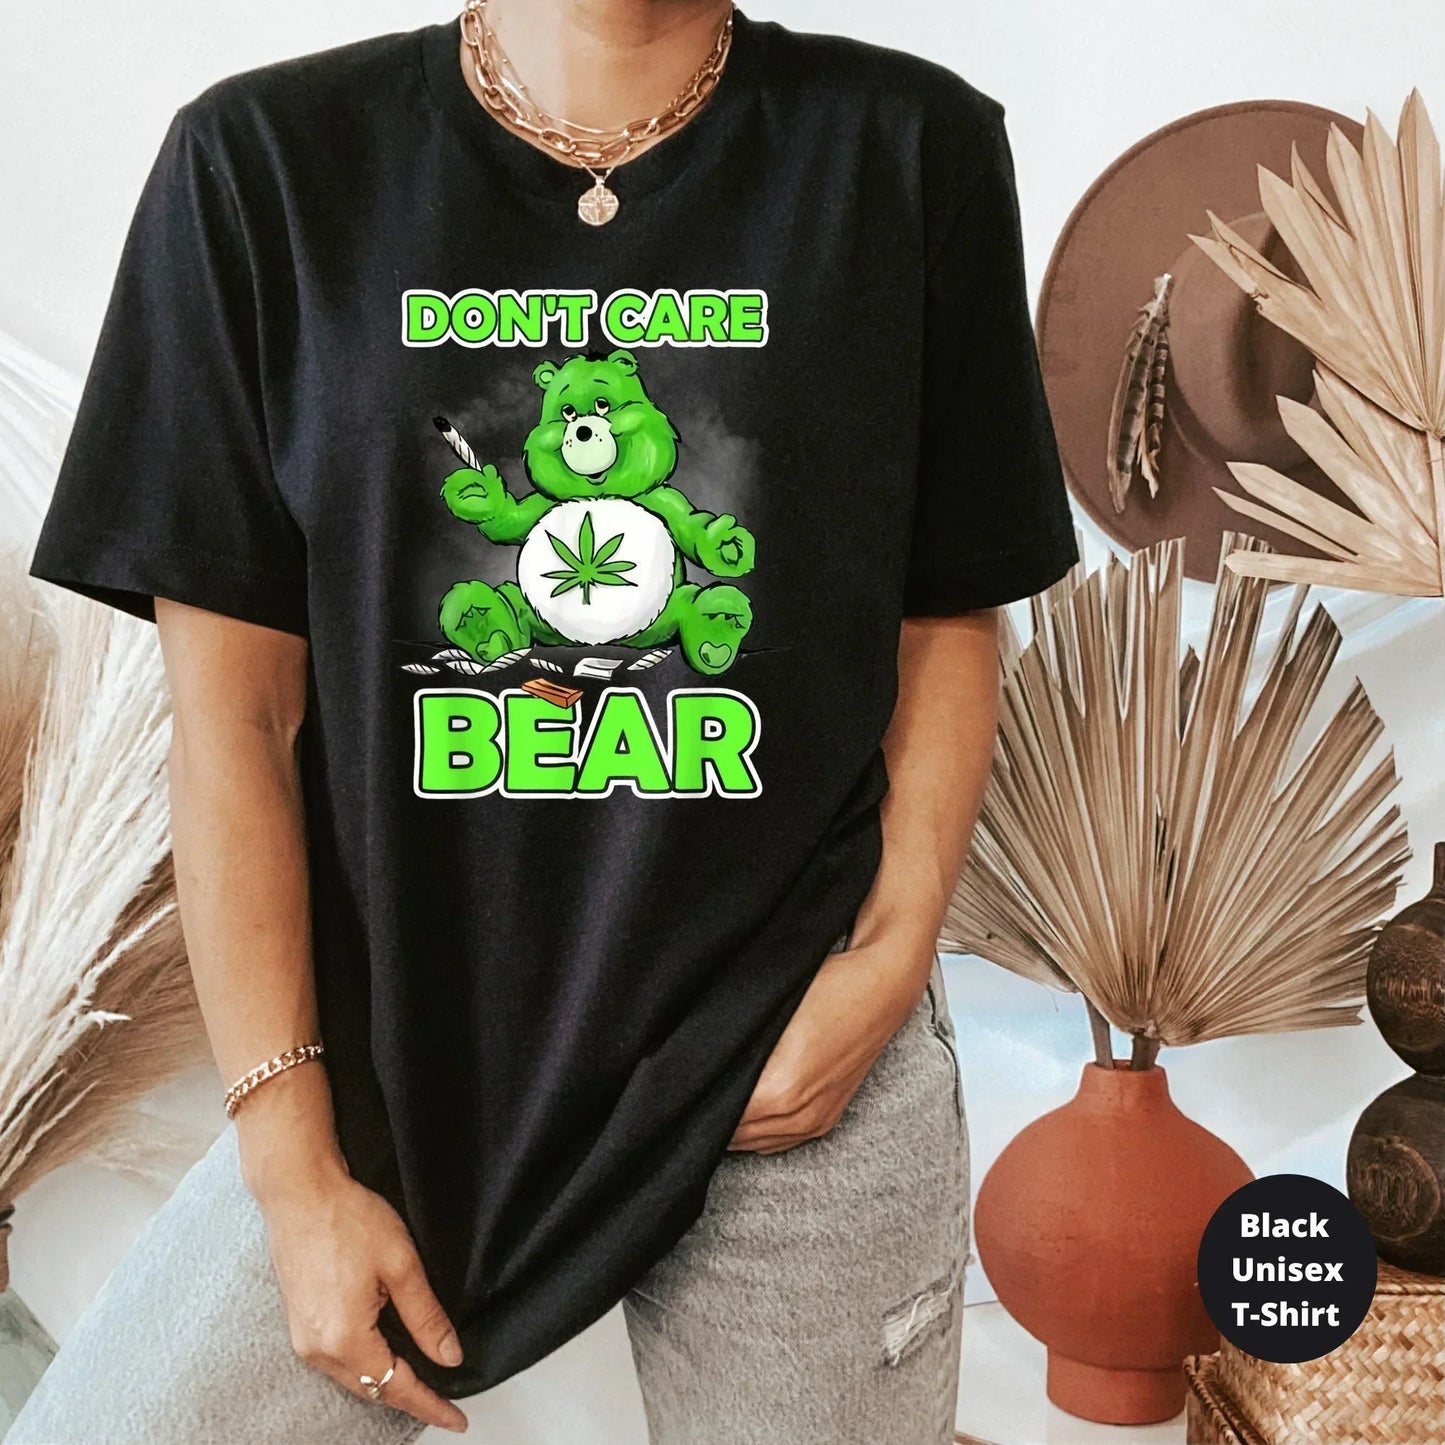 Don't Care Bear, Funny Stoner Shirt HMDesignStudioUS